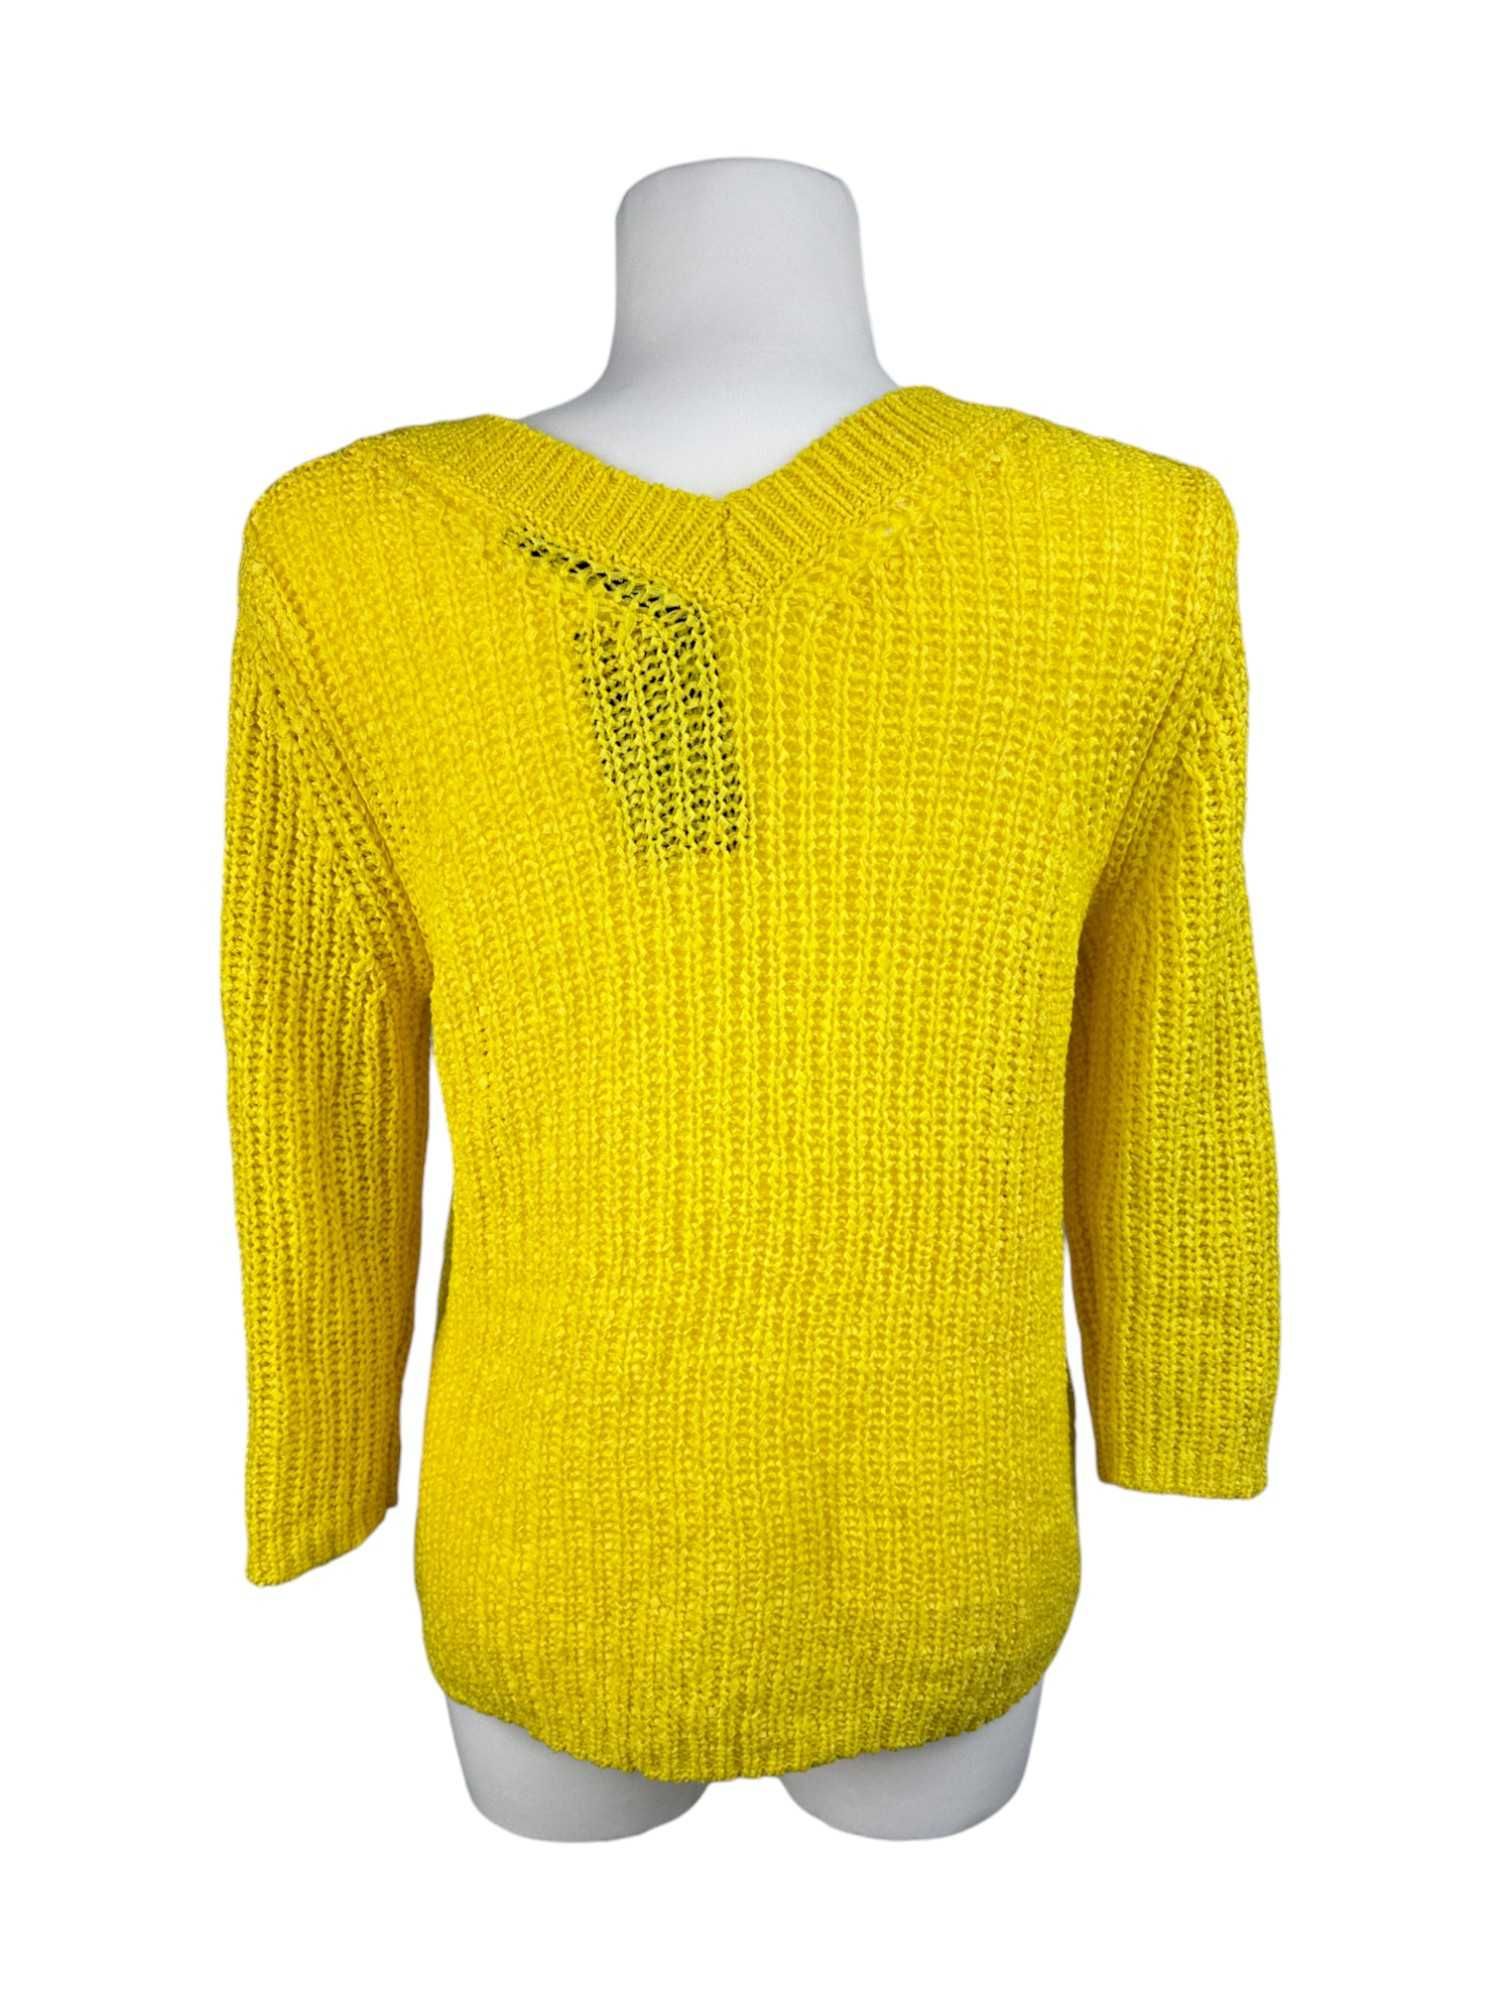 Sweter Damski Żółty [OUI] [r.38]